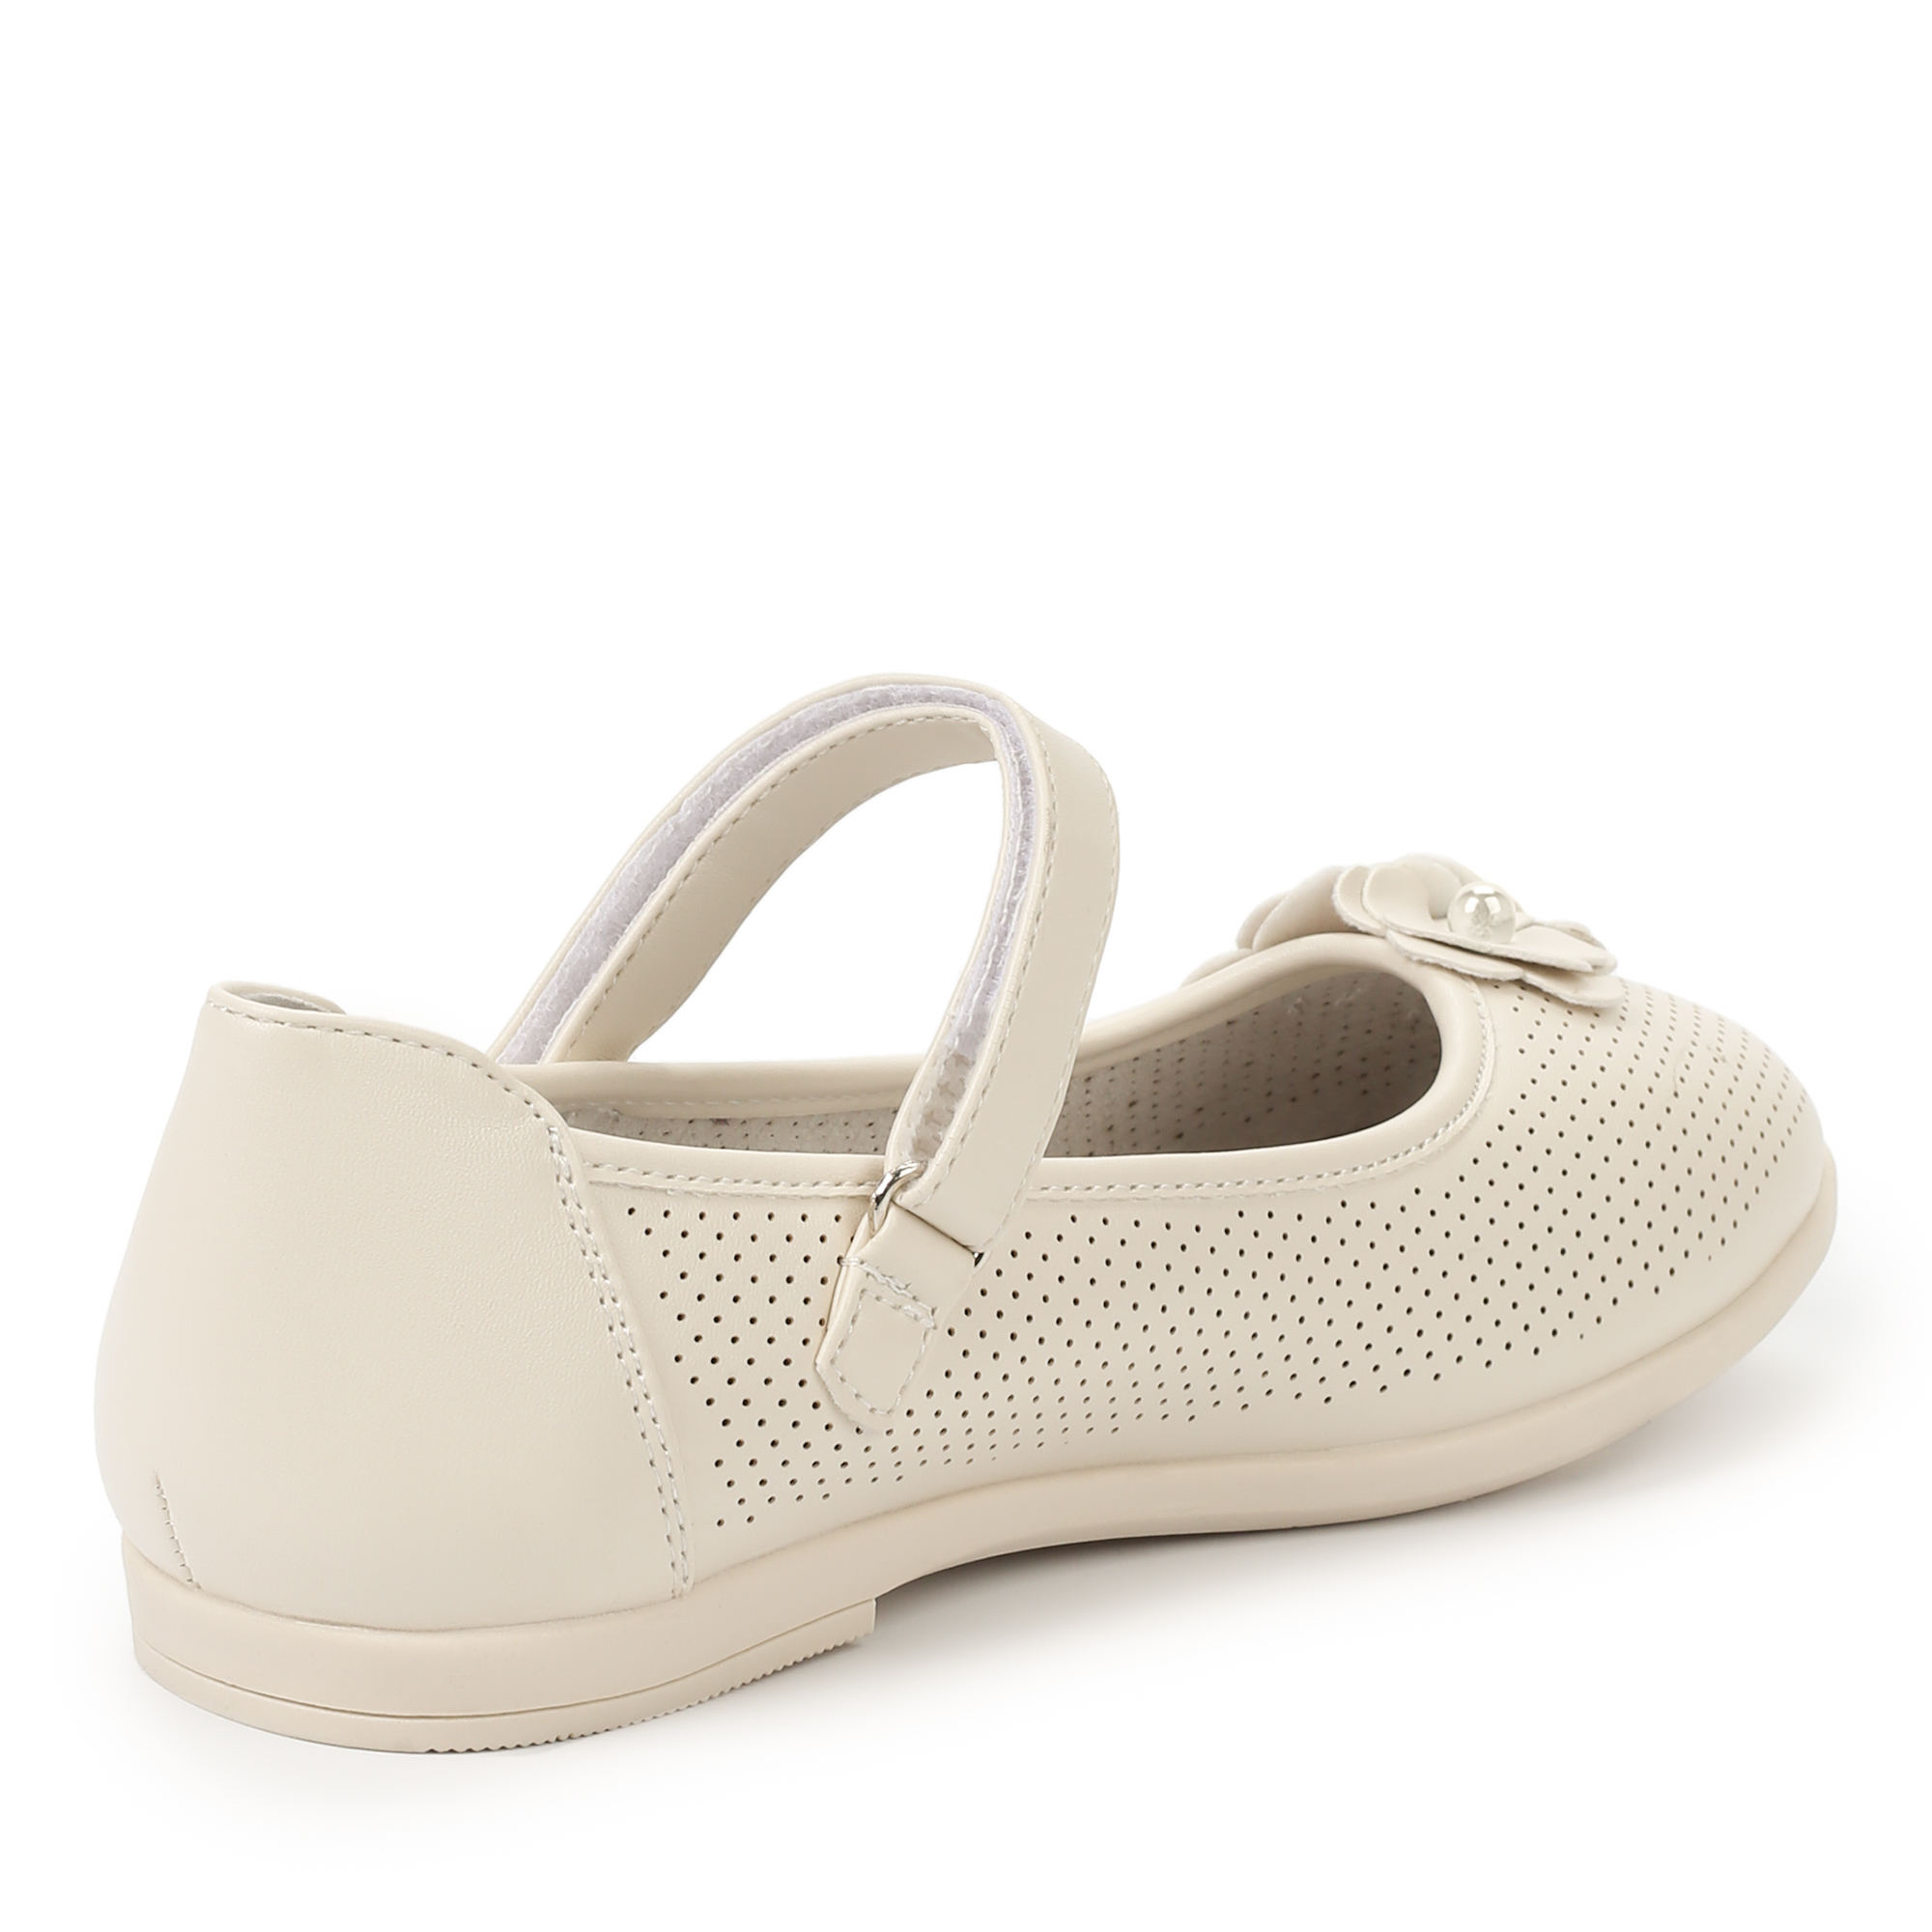 Обувь для девочек MUNZ YOUNG 174-041C-1601, цвет белый, размер 30 - фото 3